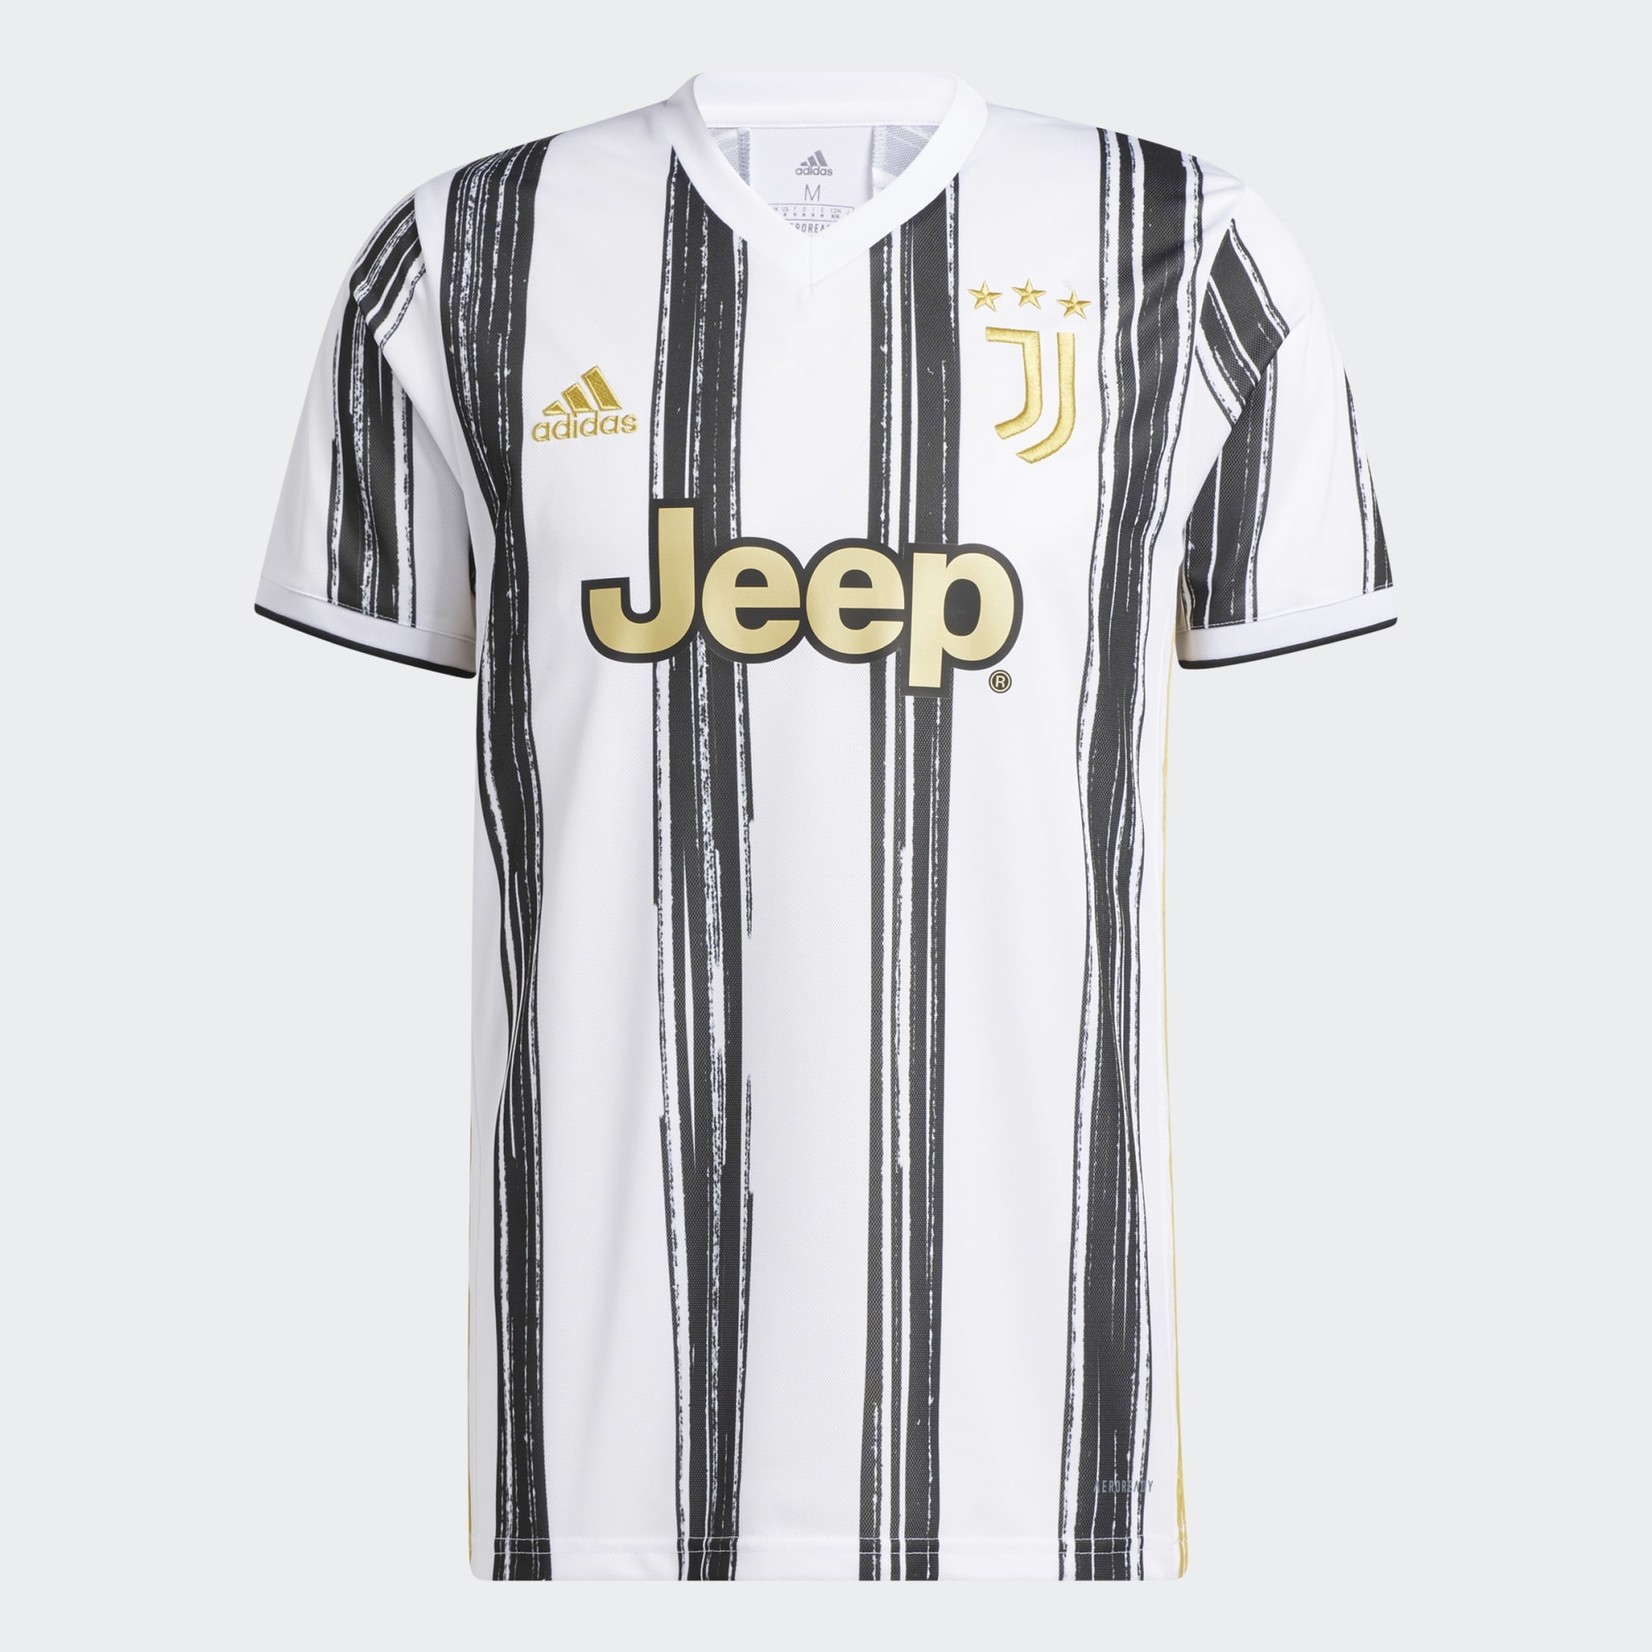 ADIDAS Juventus Home Jersey 2020/2021